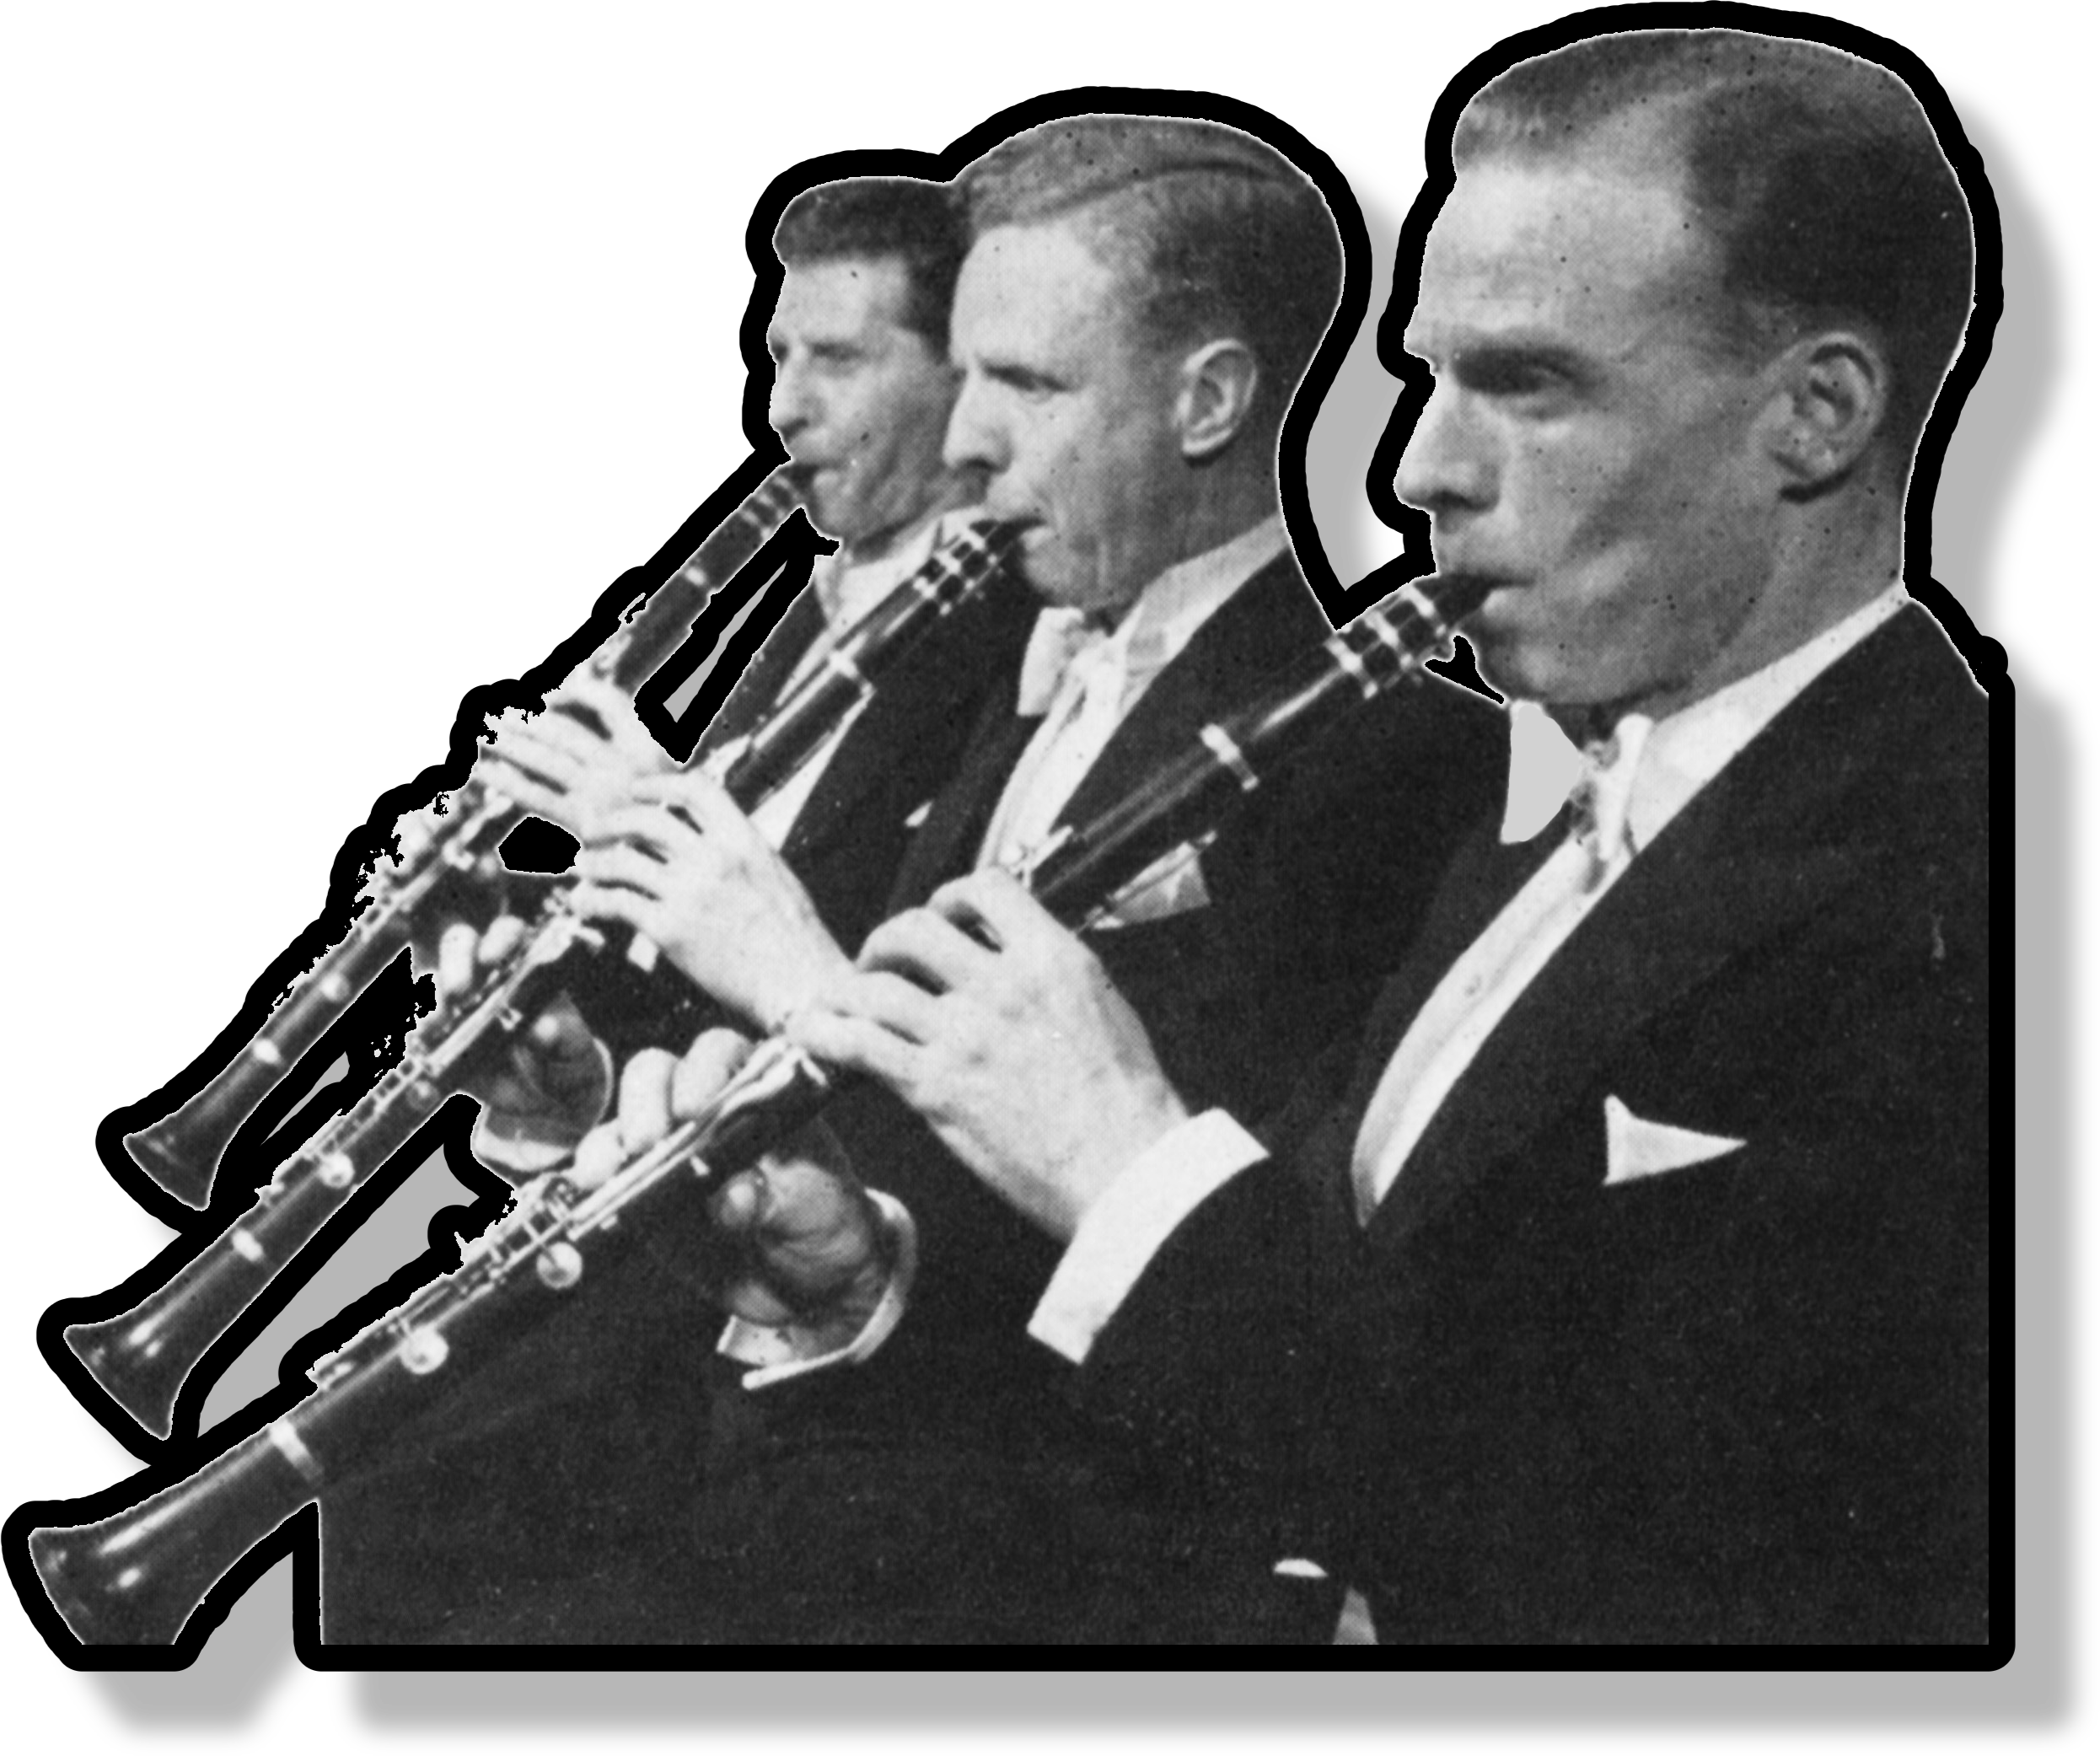 Three men play clarinets